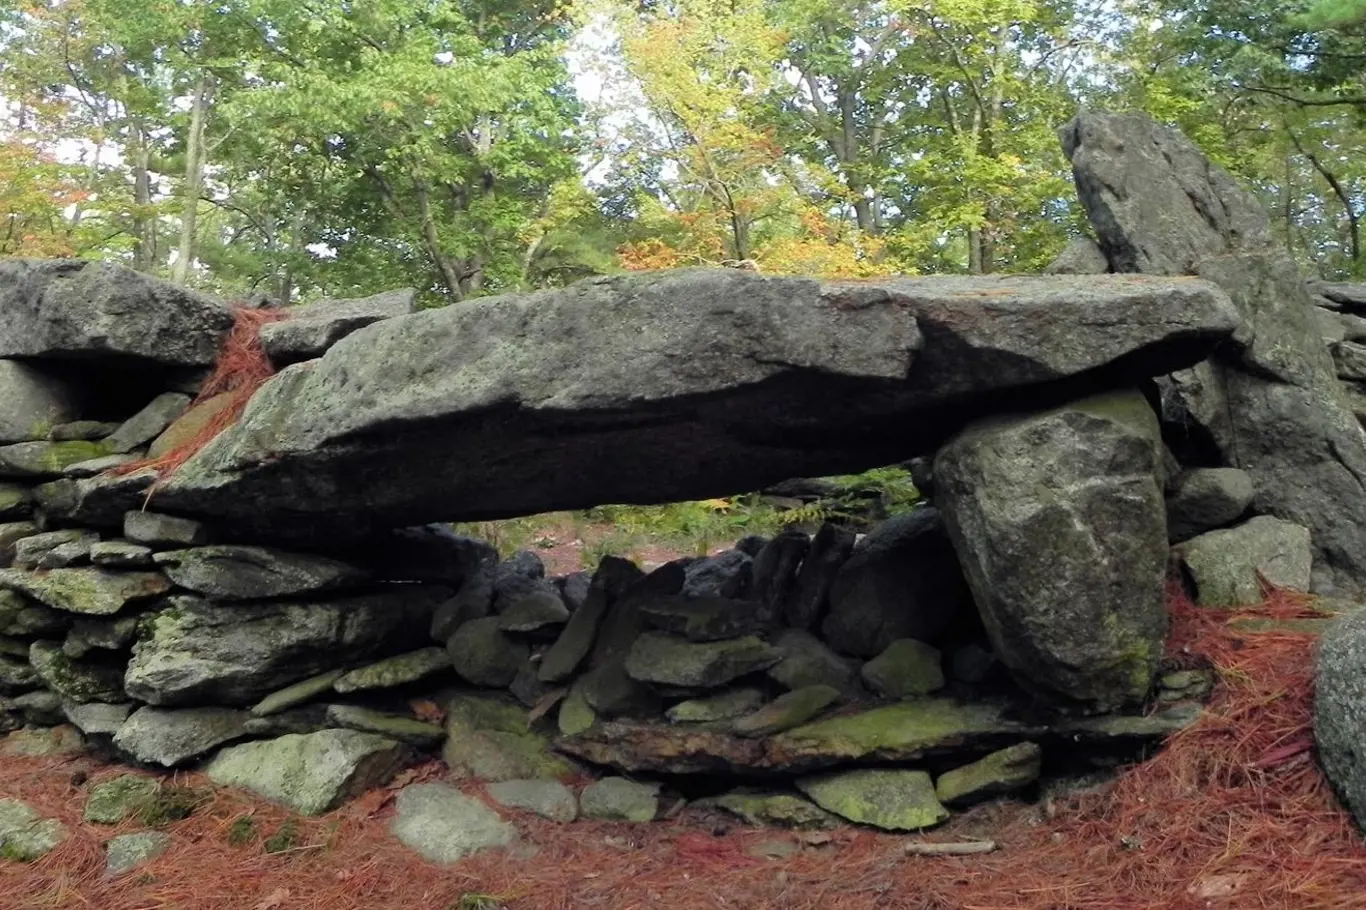 Místu s podivně nakupenými kameny se říká americké Stonehenge, dříve neslo název Mystery Hill, tedy záhadný kopec. 